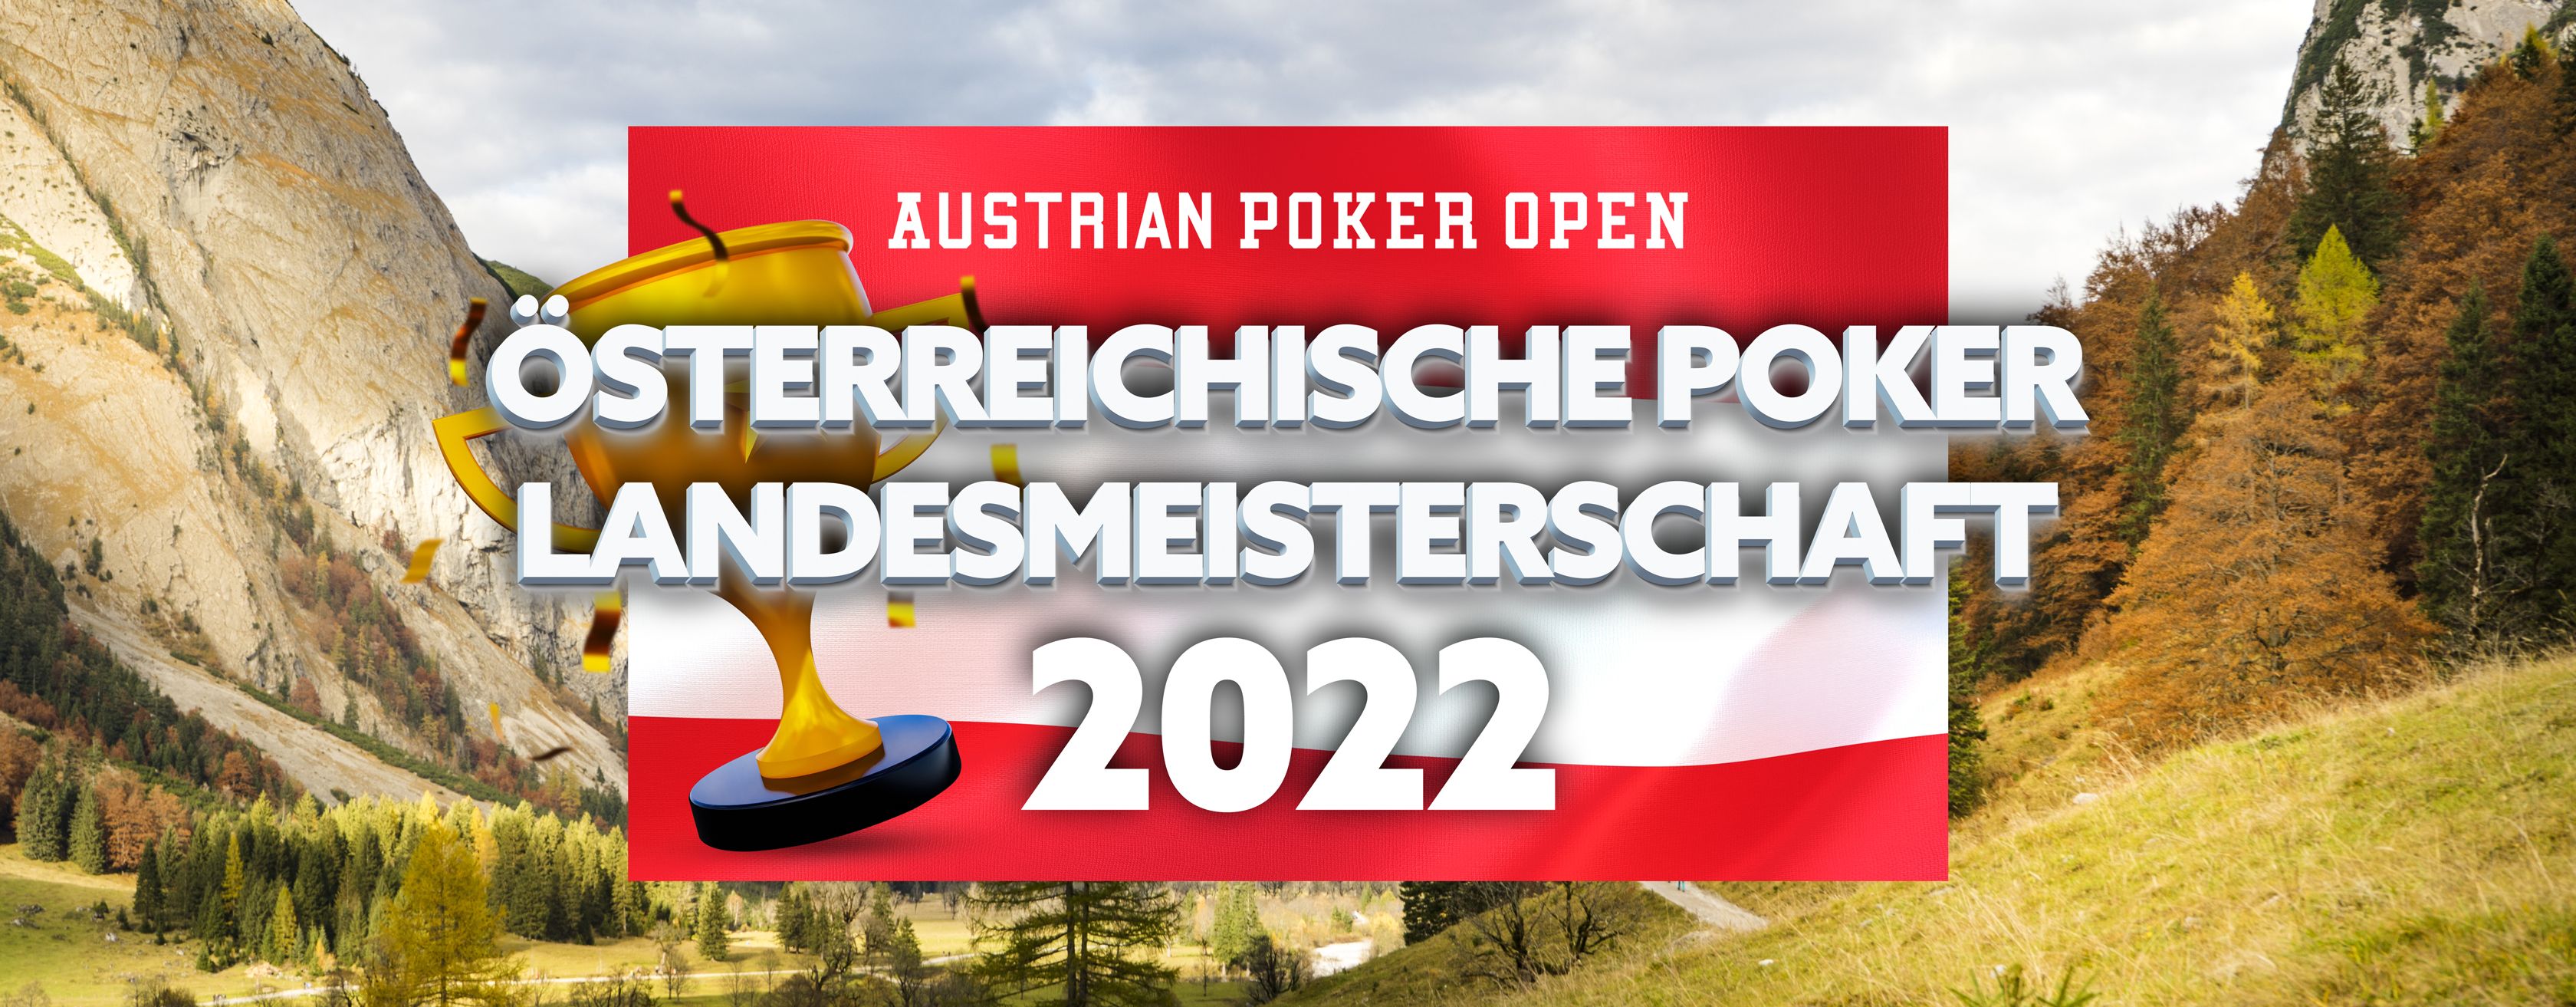 Österreichische Poker Landesmeisterschaft Kärnten